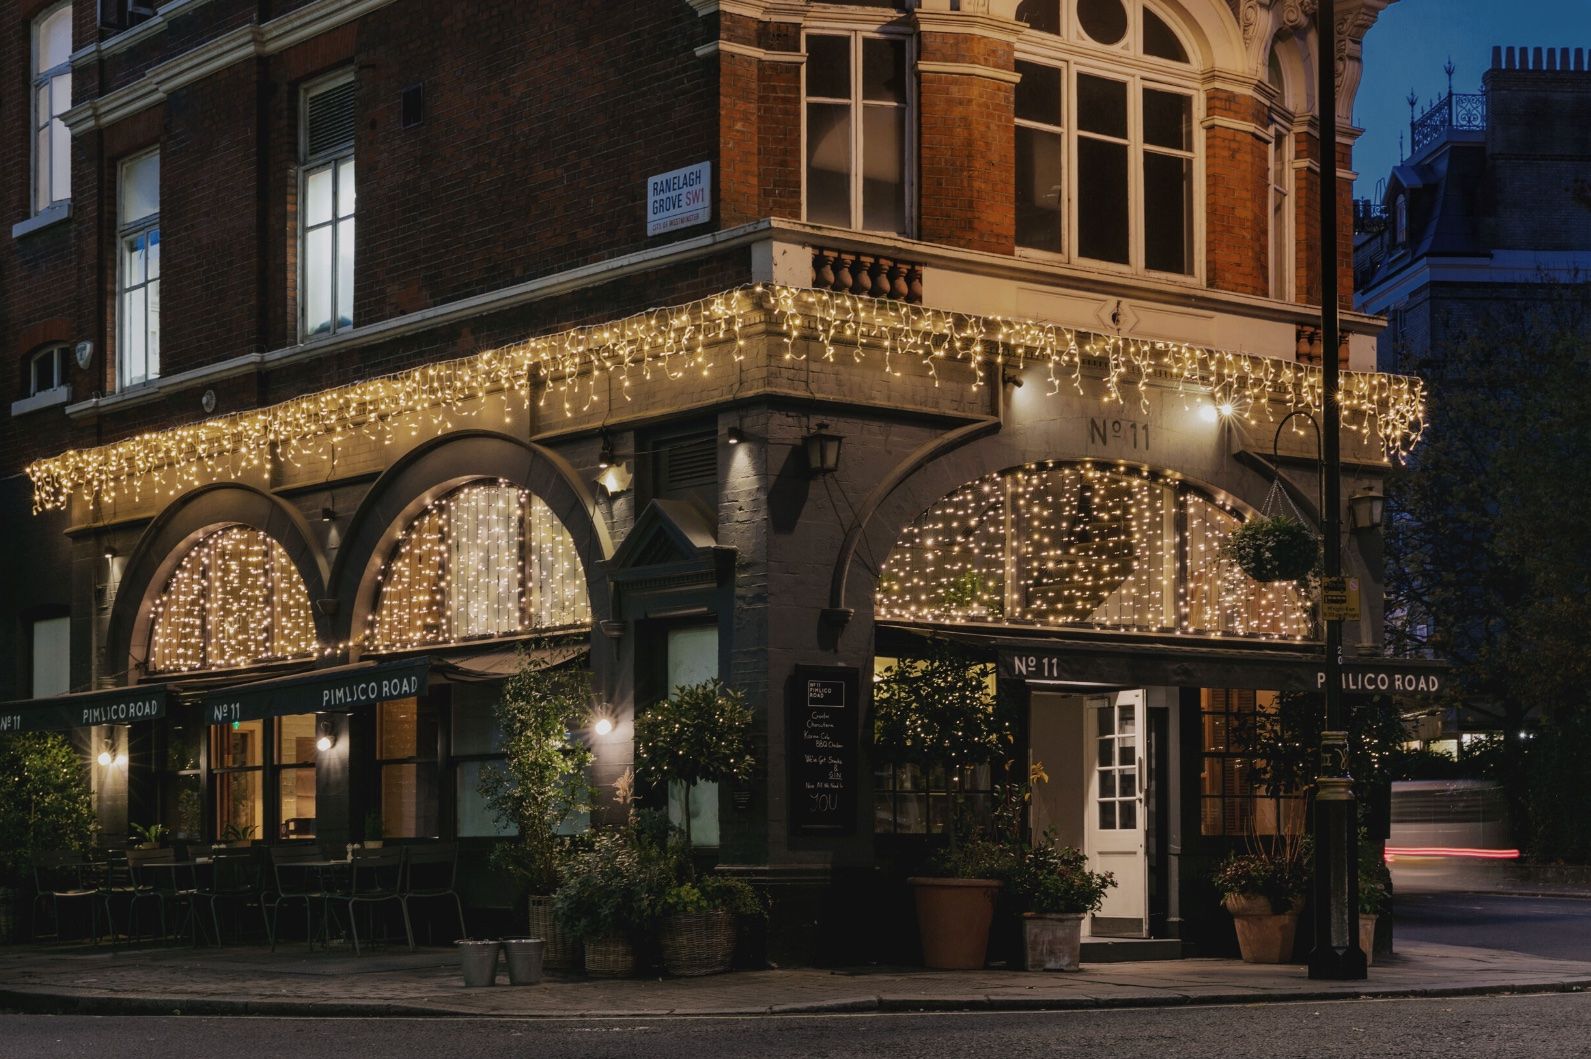 No 11 Pimlico Road – Bars in Victoria